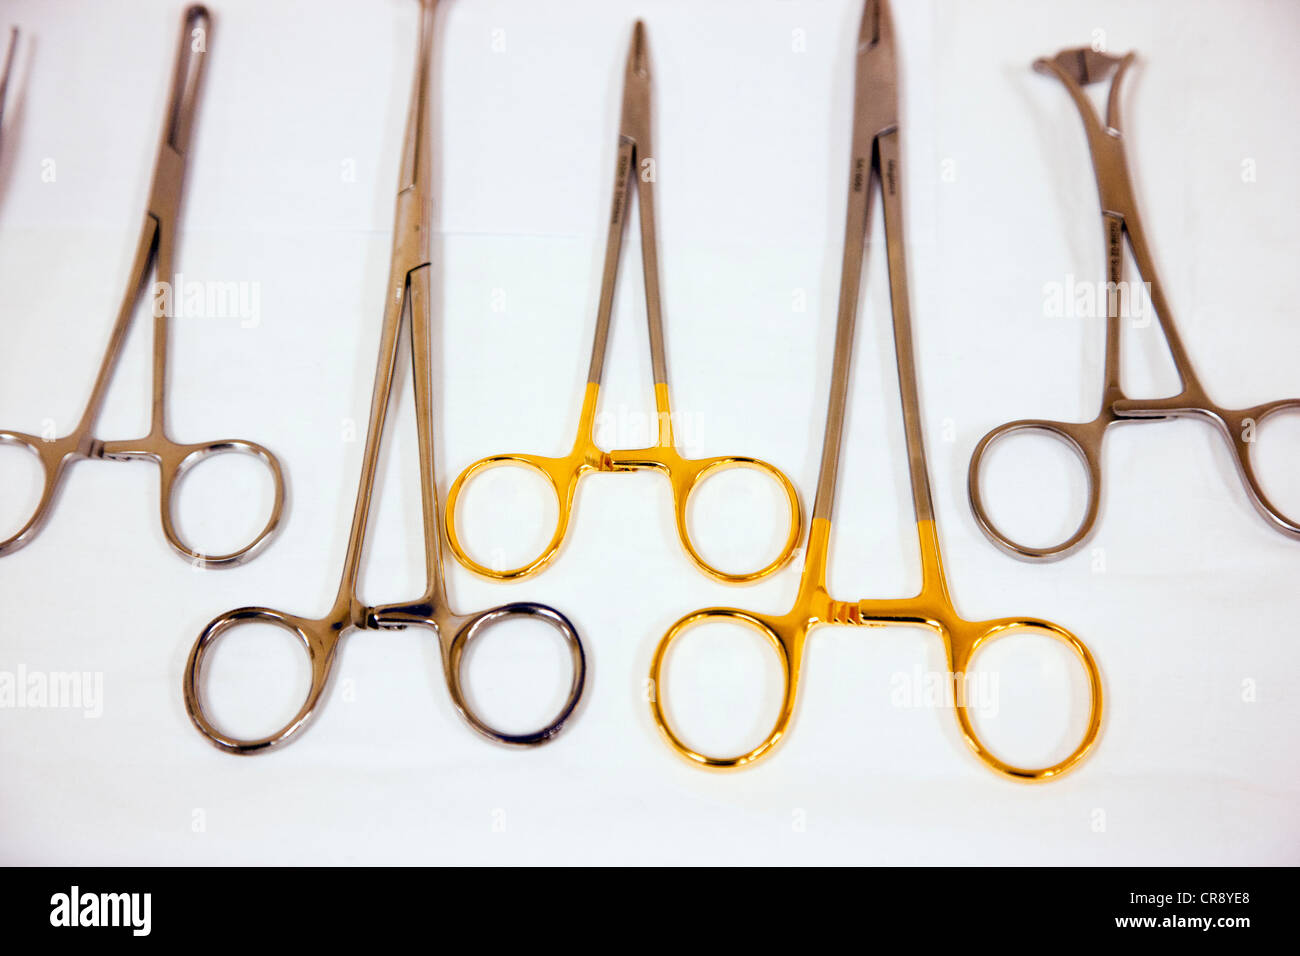 Los instrumentos y herramientas utilizadas en los procedimientos operativos médicos Foto de stock